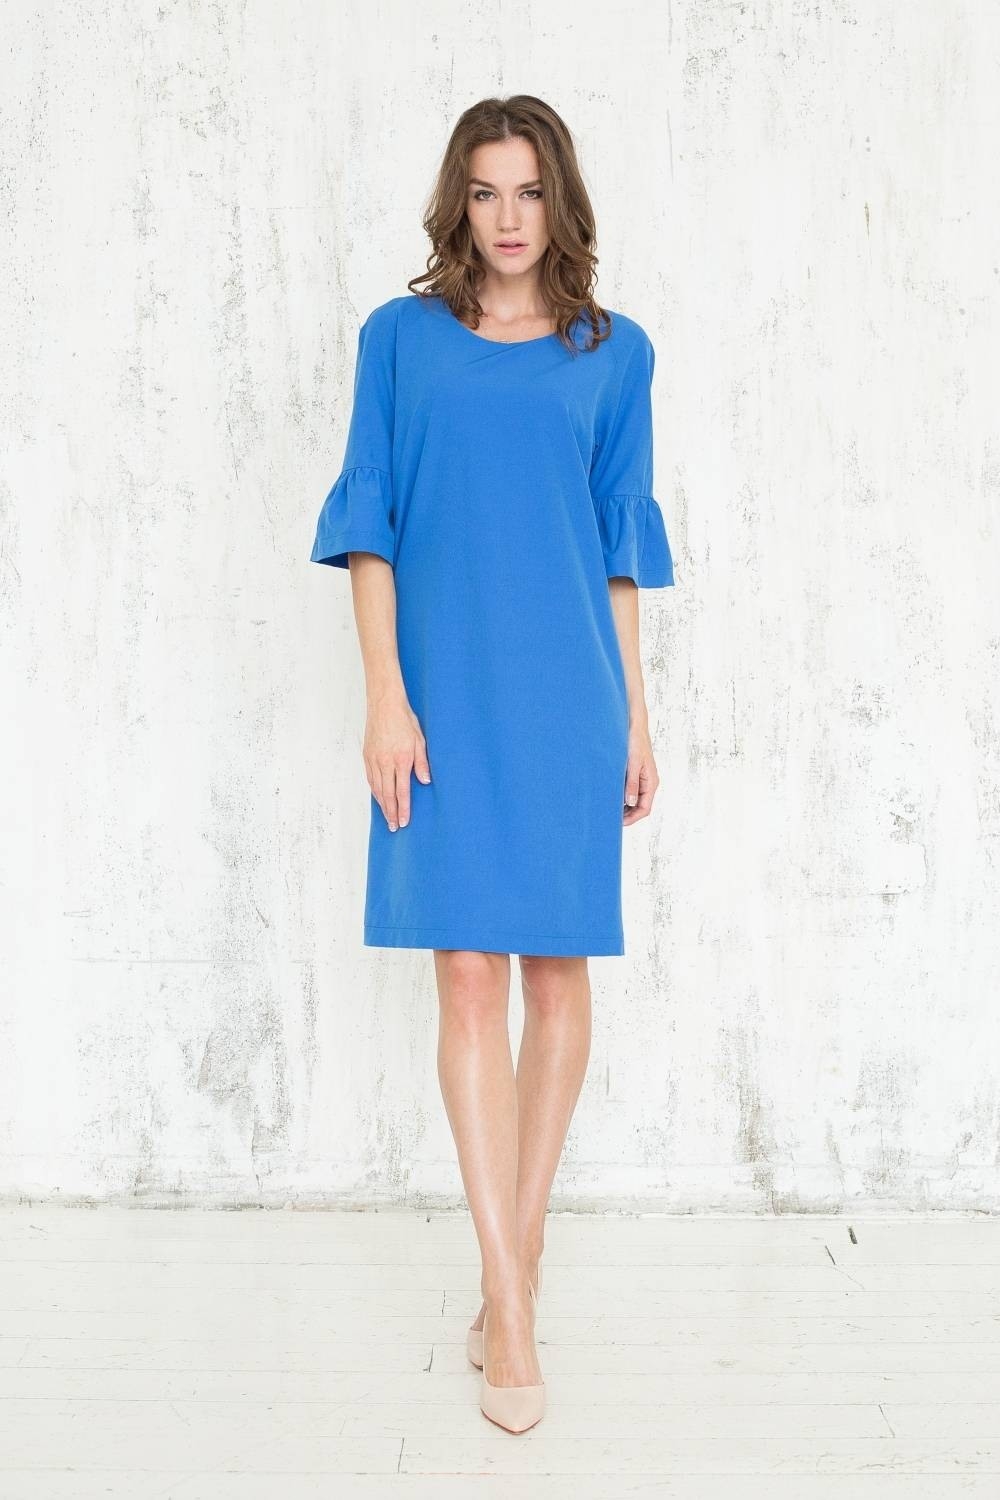 Formal Schön Blaues Kleid A Linie für 2019Formal Luxurius Blaues Kleid A Linie Galerie